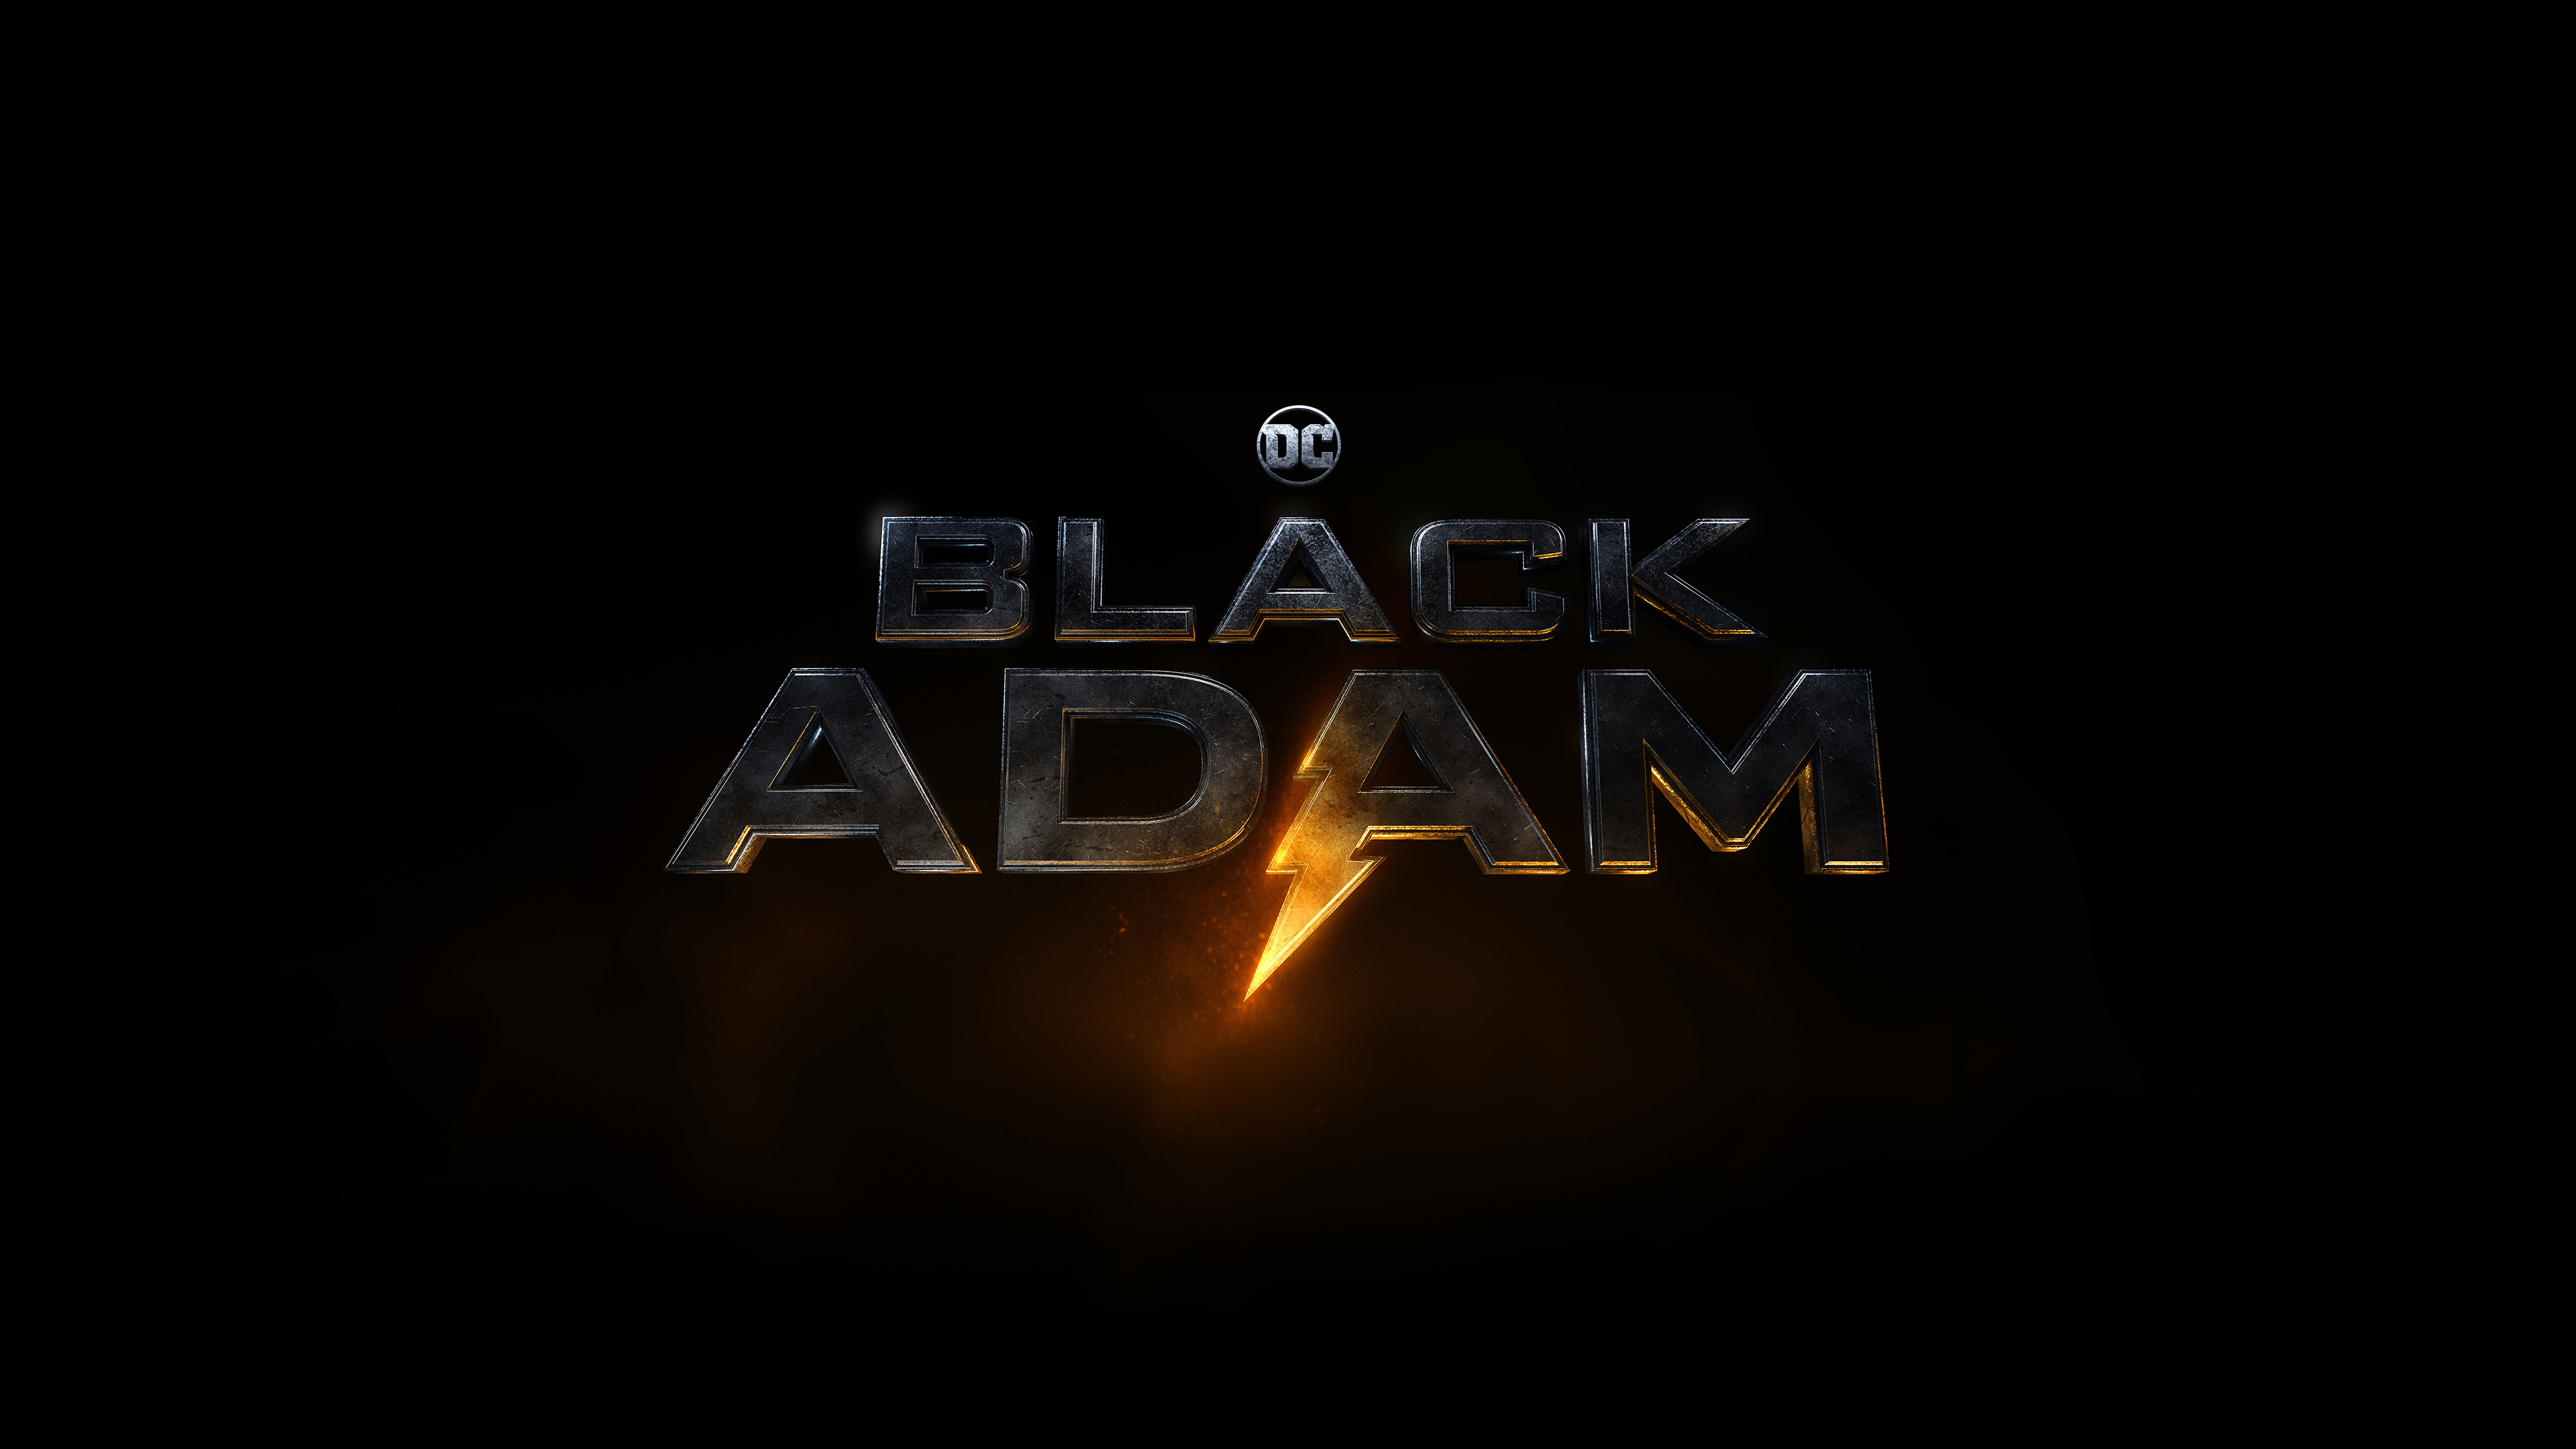 black adam 2021 4k 1602435778 - Black Adam 2021 4k - Black Adam 2021 4k wallpapers